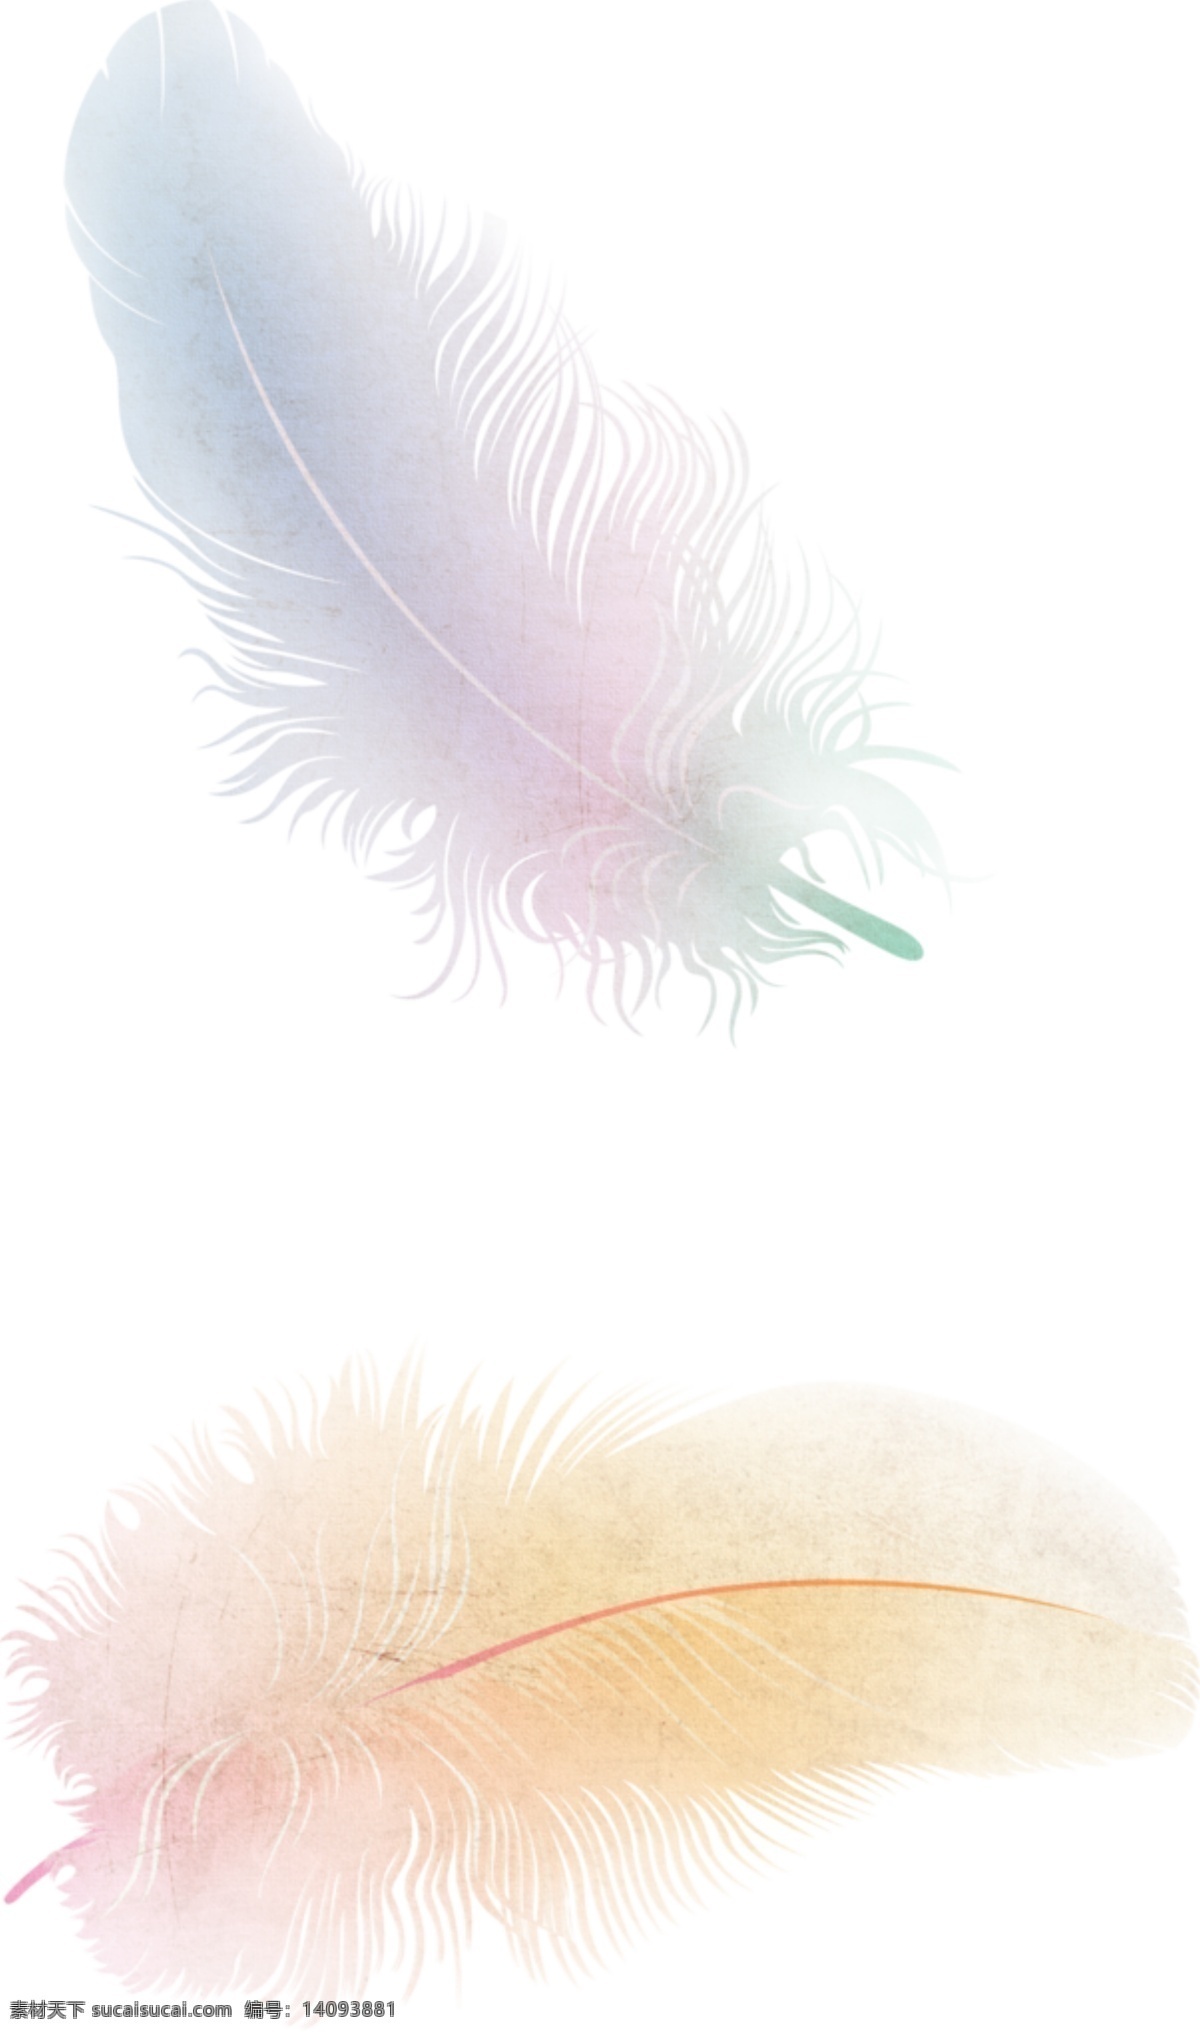 透明羽毛元素 png素材 羽毛素材 彩色羽毛素材